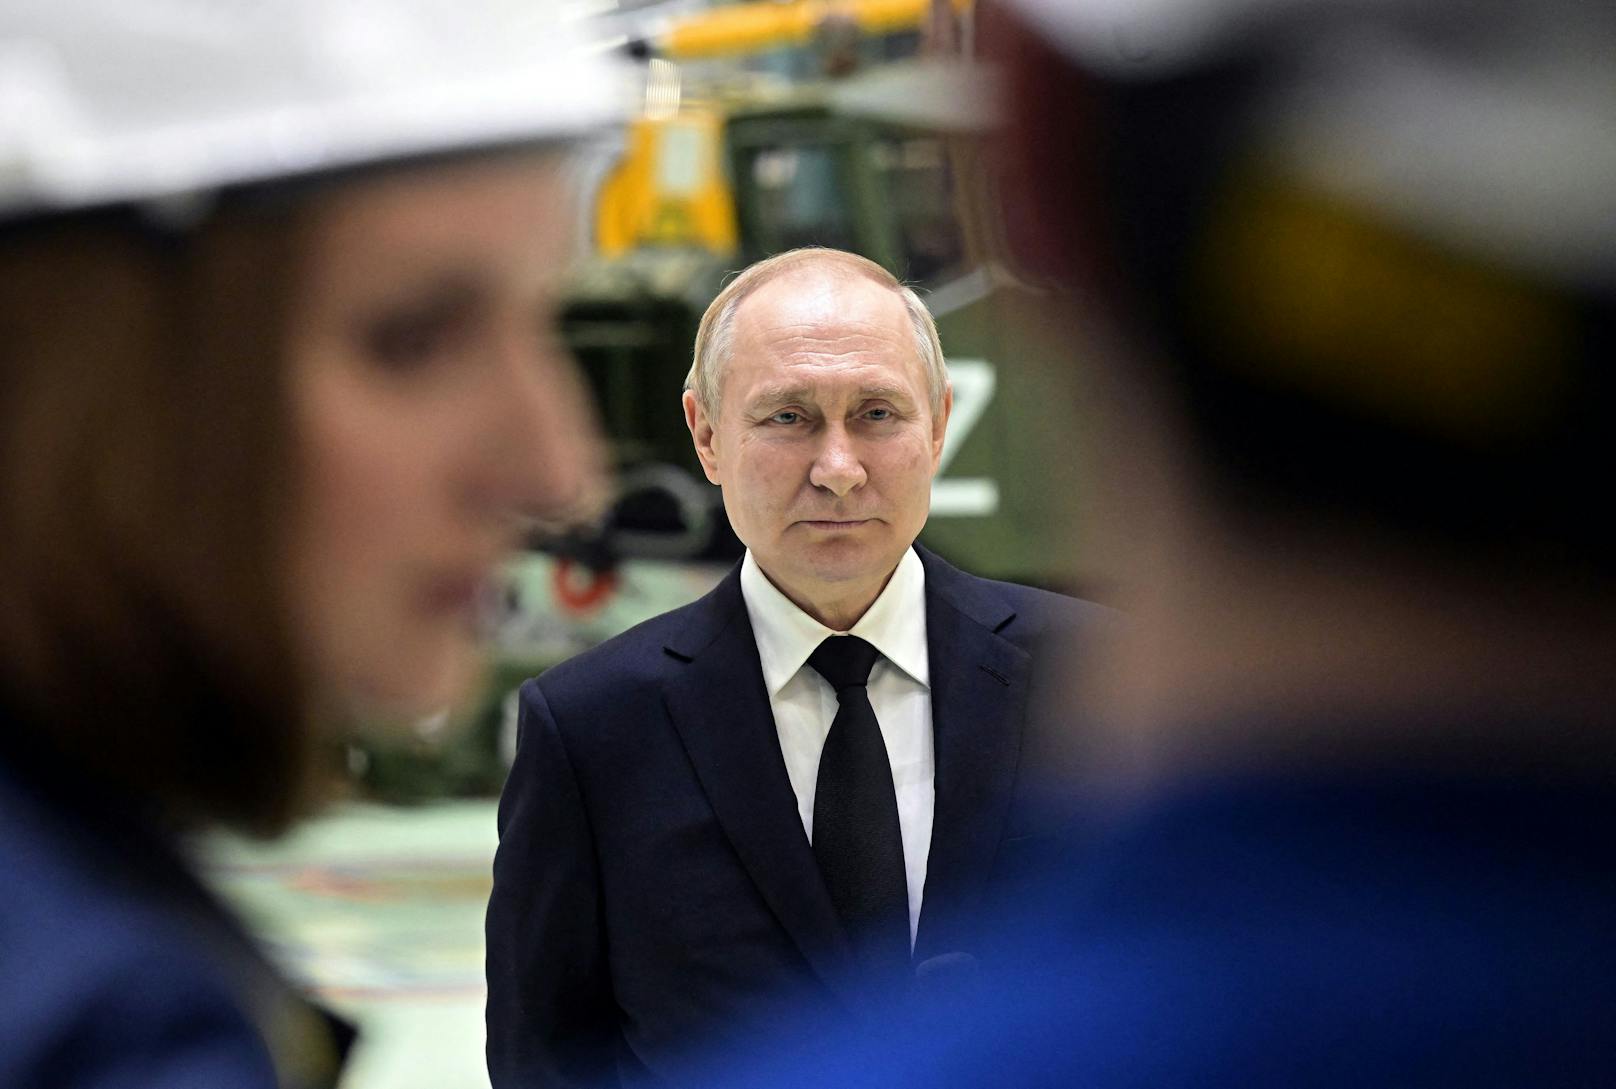 Ist er es wirklich? Laut Wolodimir Selenski könnte Putin längst tot sein und ein Doppelgänger die Macht übernommen haben.